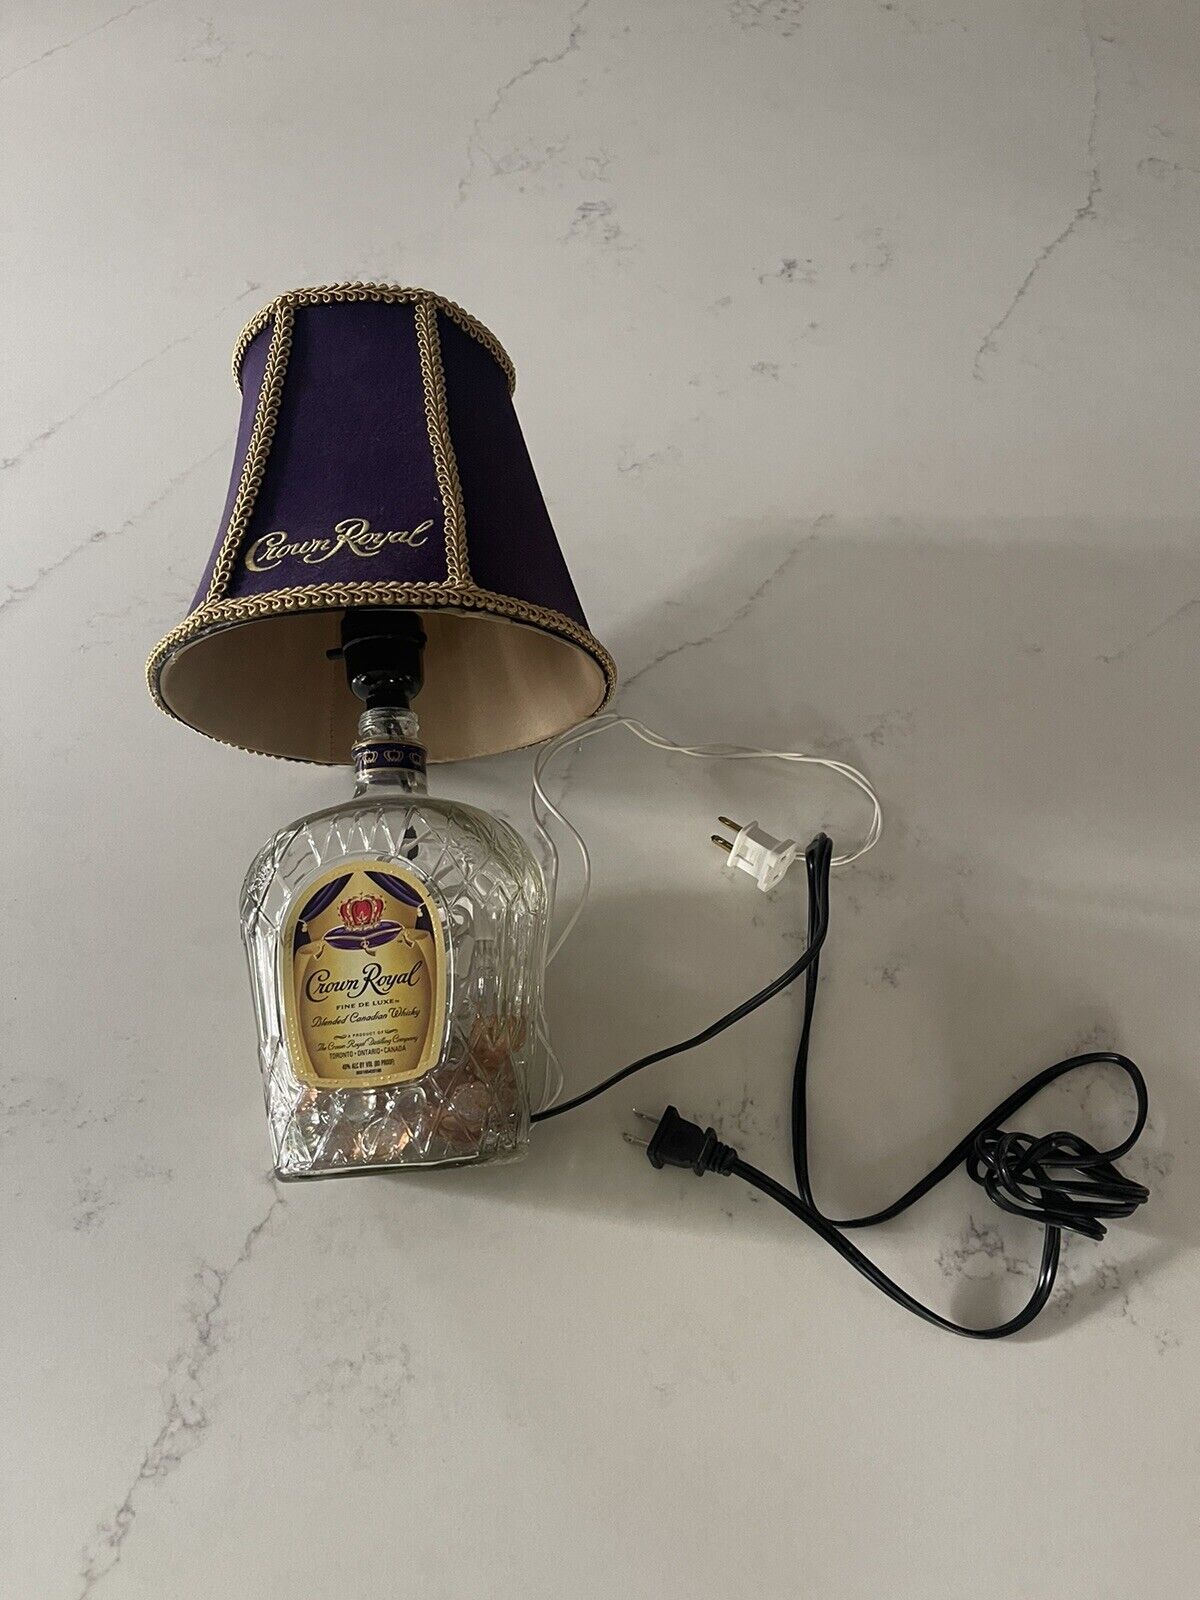 CROWN ROYAL WHISKEY Liquor Bottle TABLE LAMP LIGHT Works